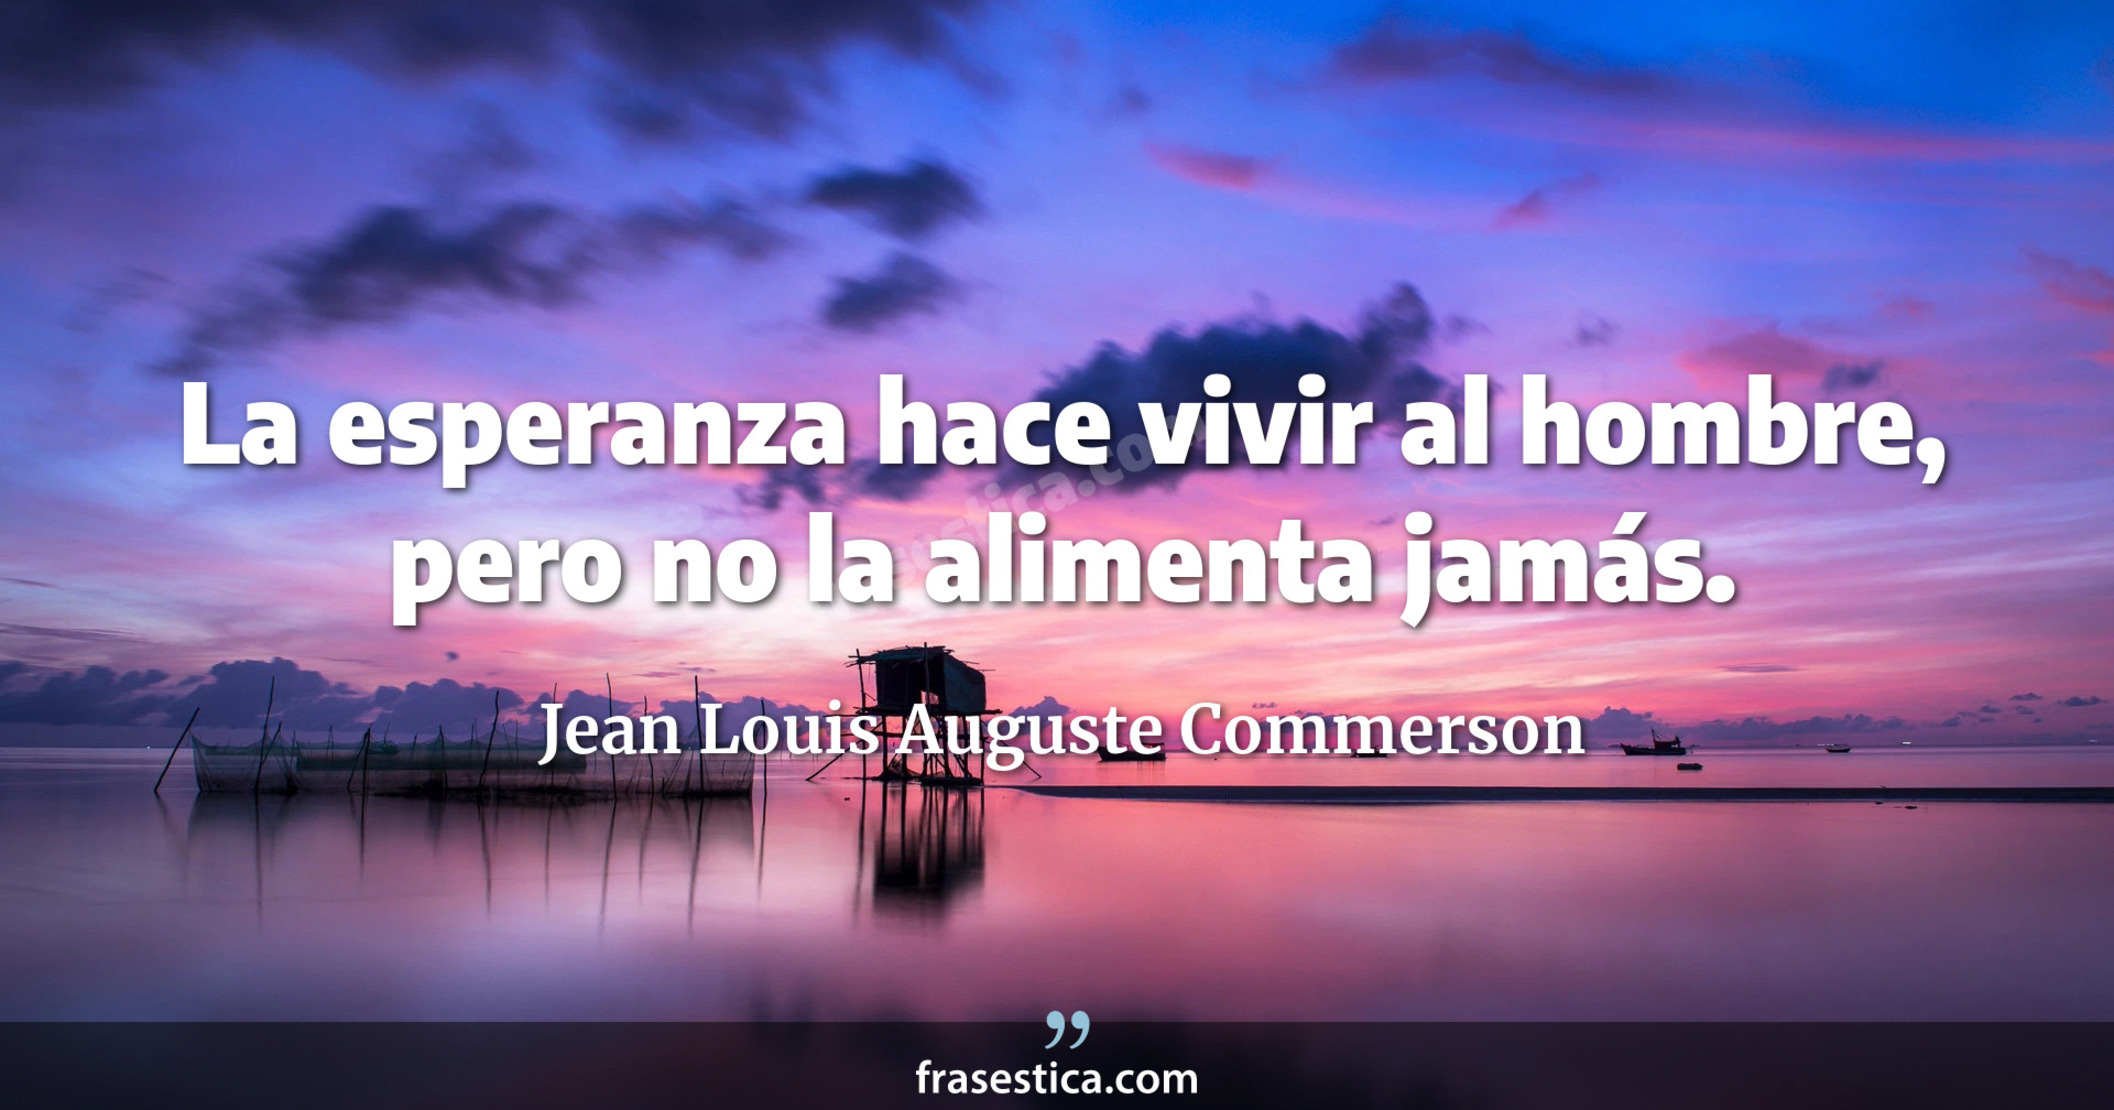 La esperanza hace vivir al hombre, pero no la alimenta jamás. - Jean Louis Auguste Commerson